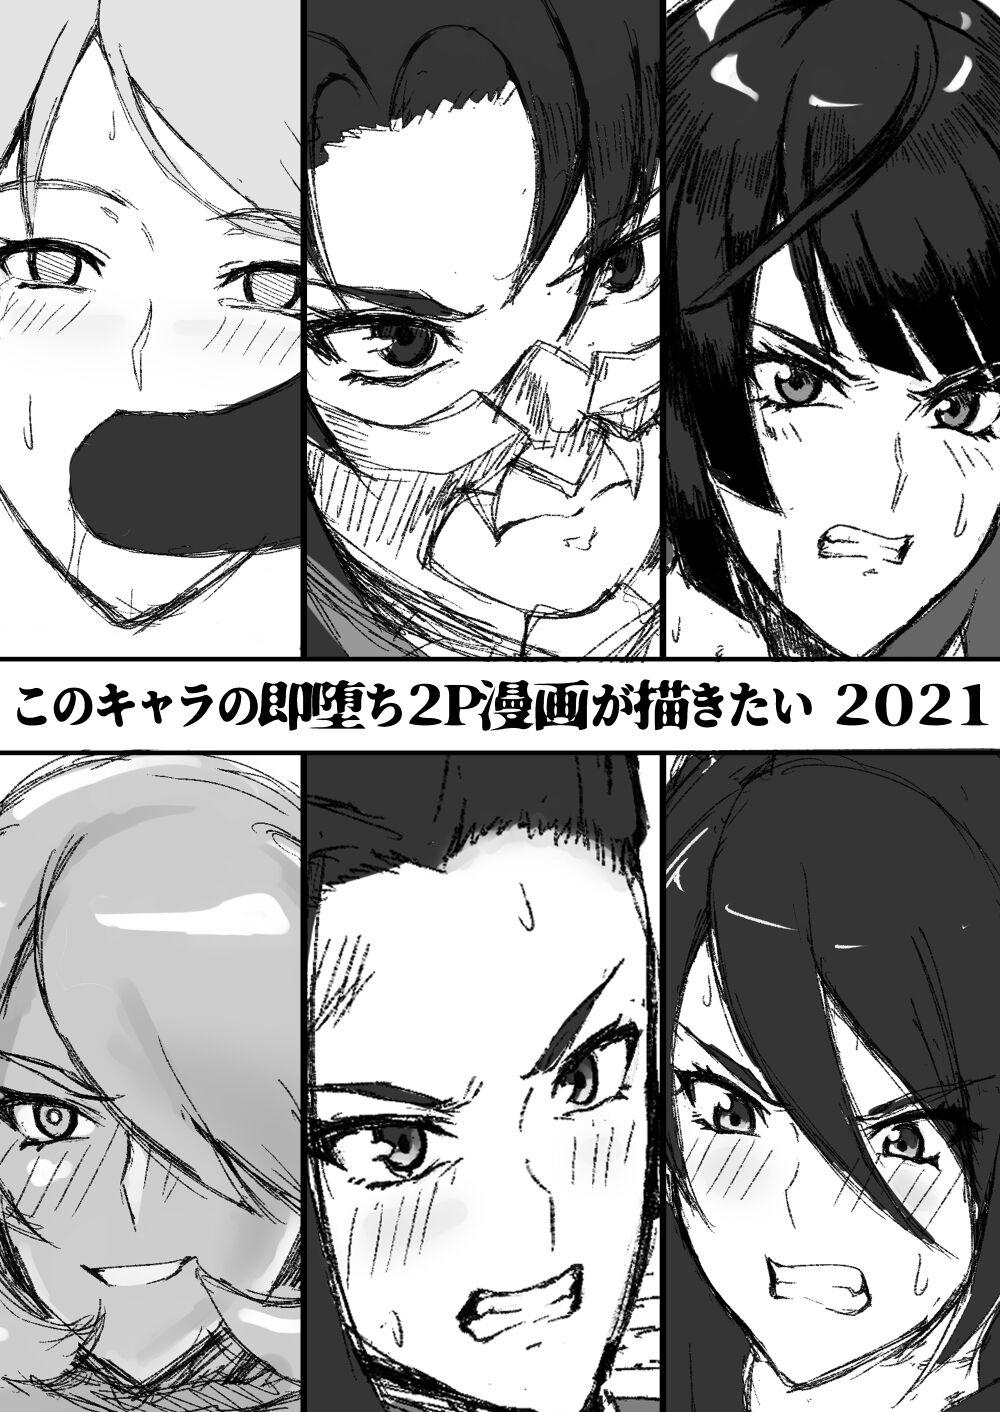 Kono Chara no Soku Ochi 2P Manga ga Kakitai 2021 0